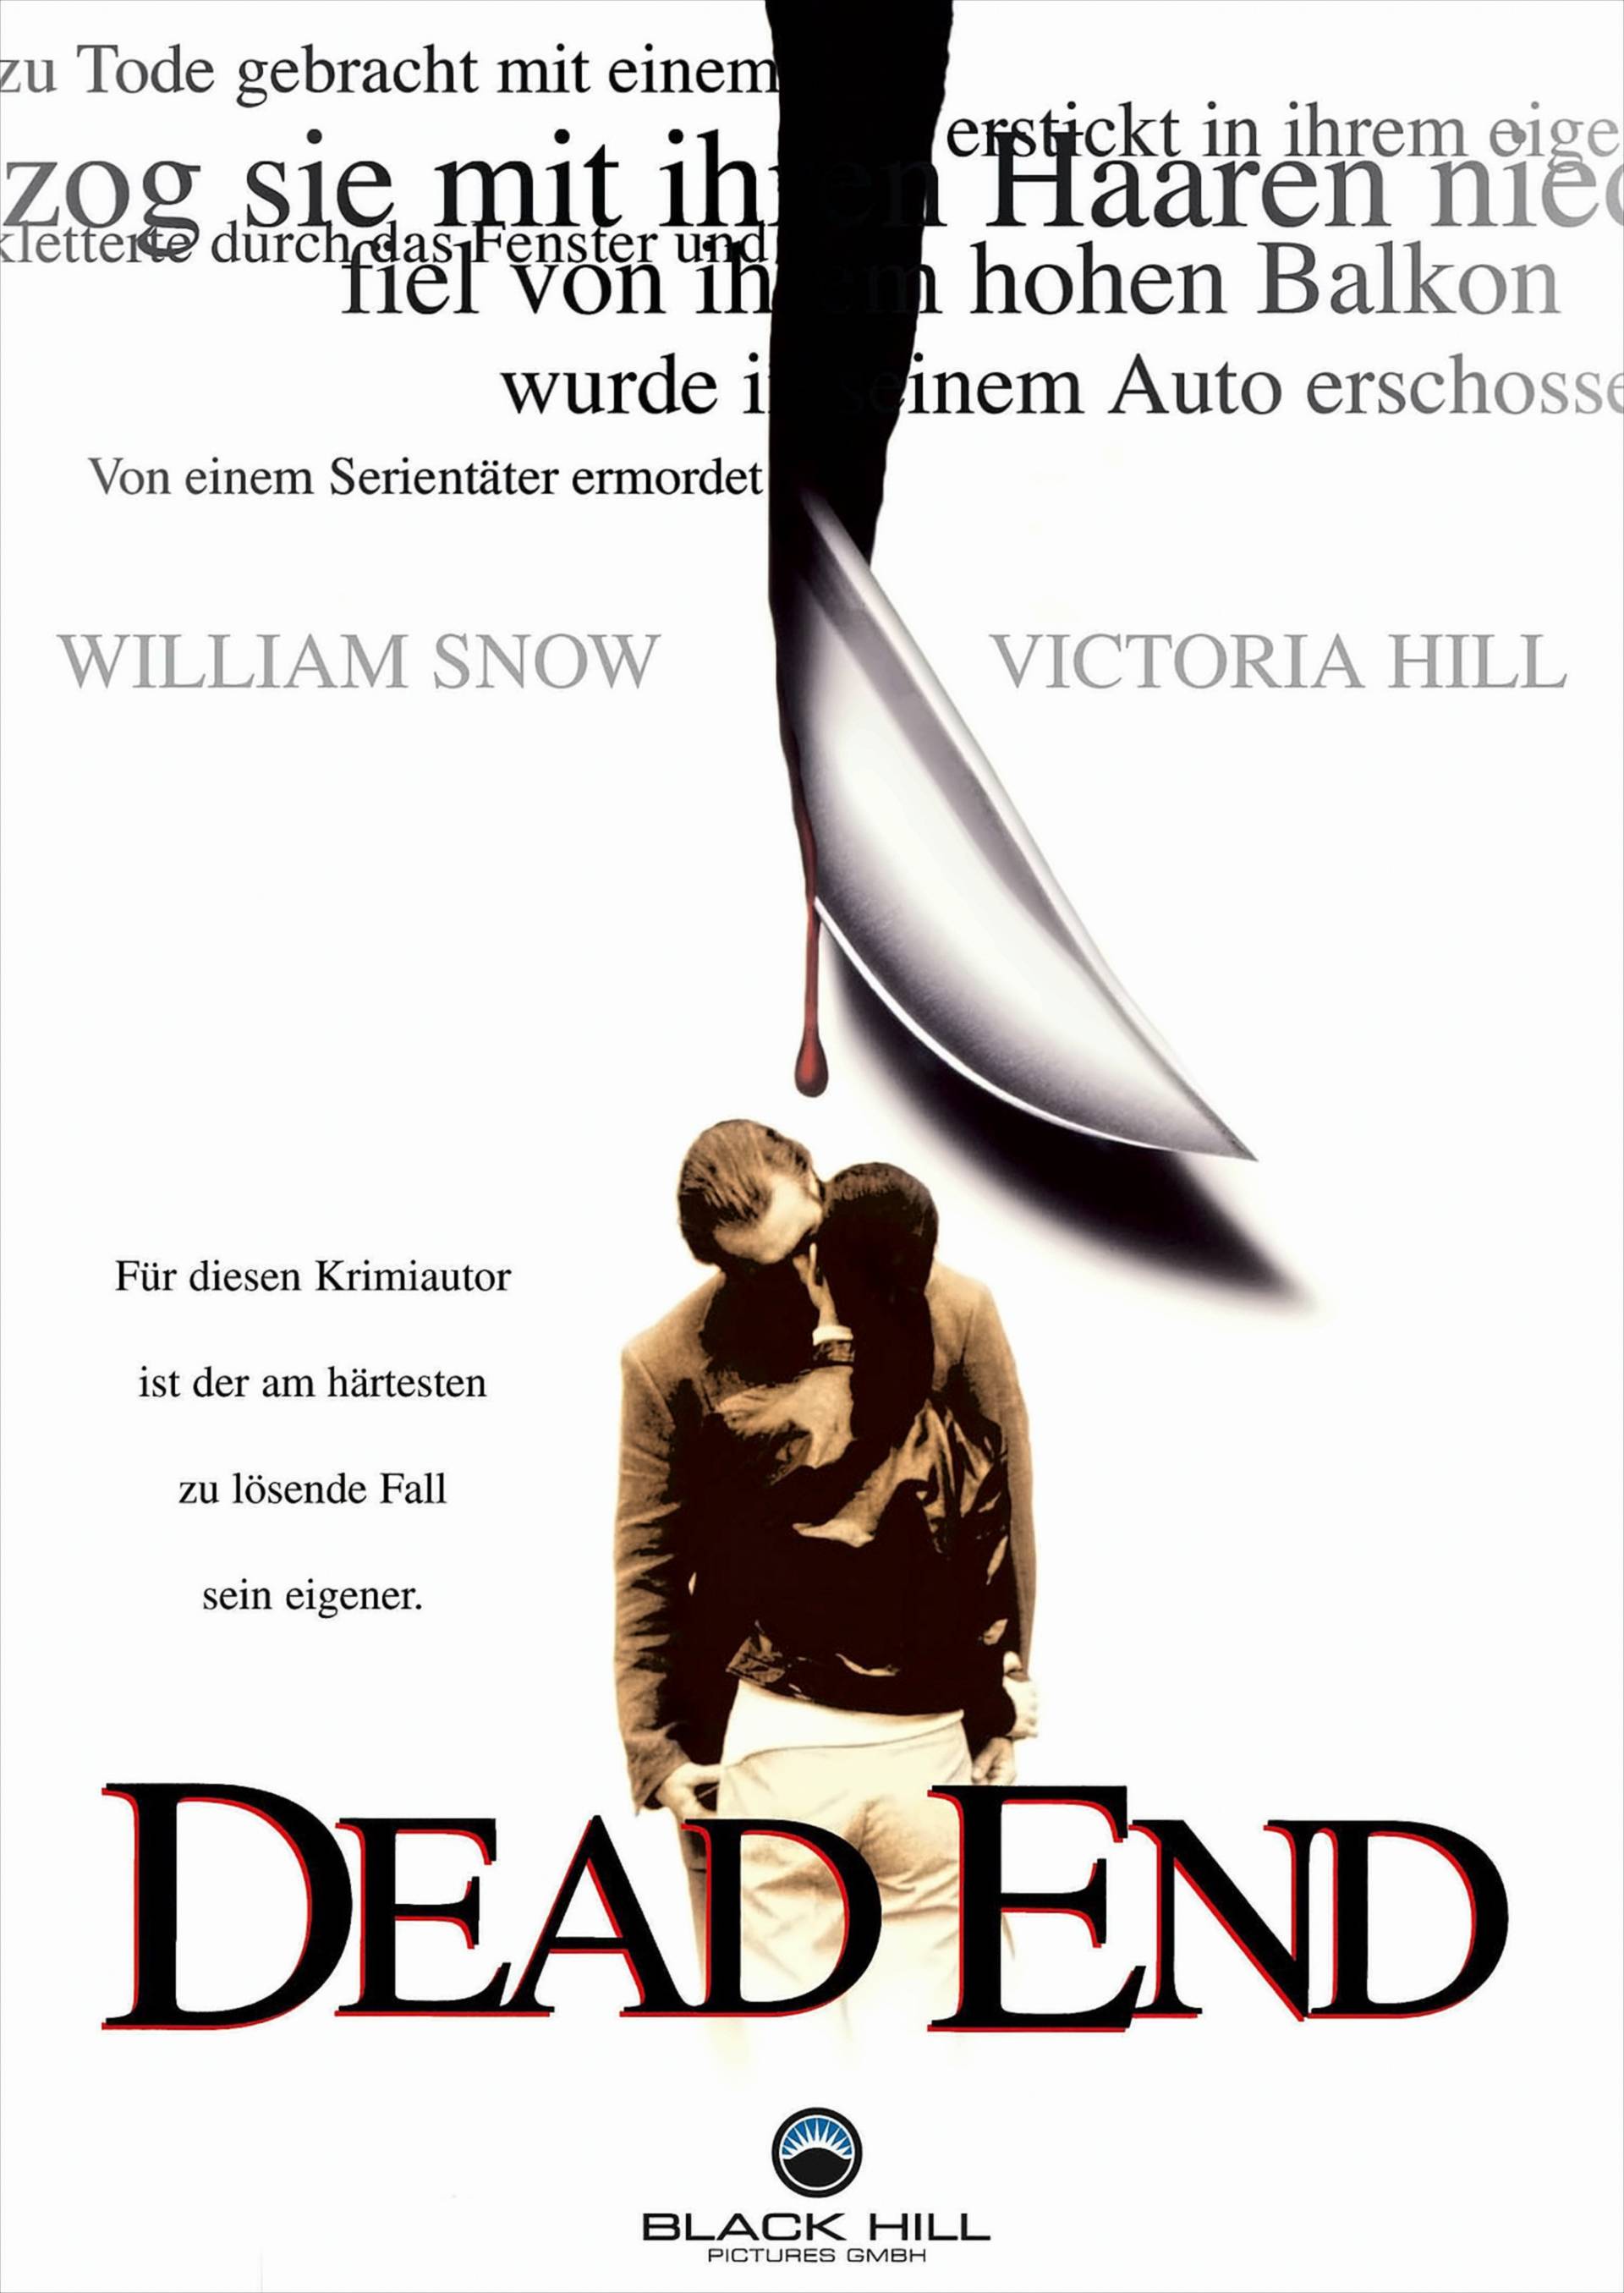 Dead End von Cine Plus